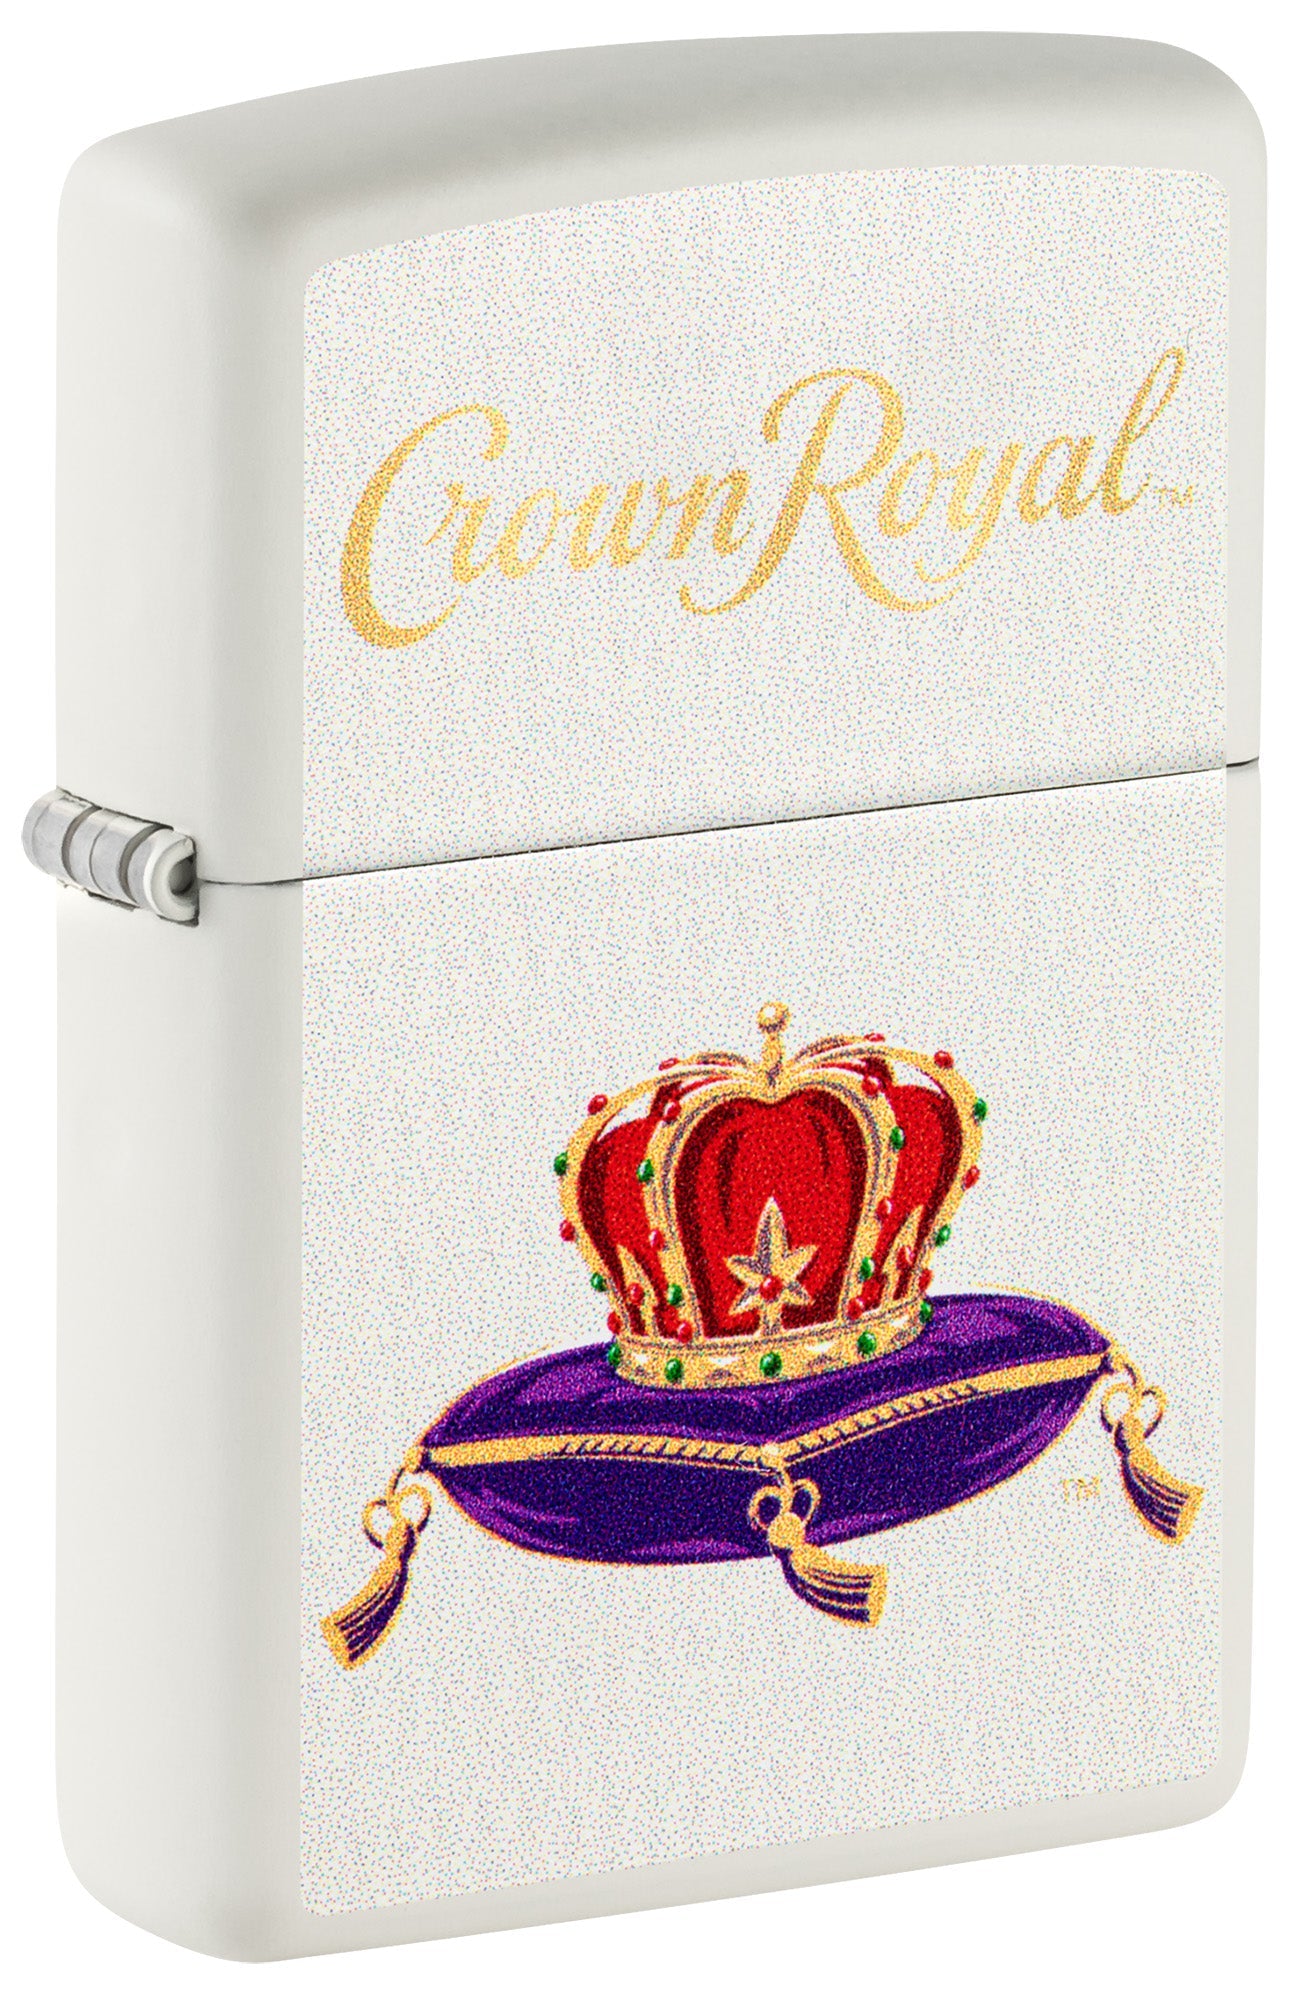 Zippo Lighter: Crown Royal Logo - White Matte 81508